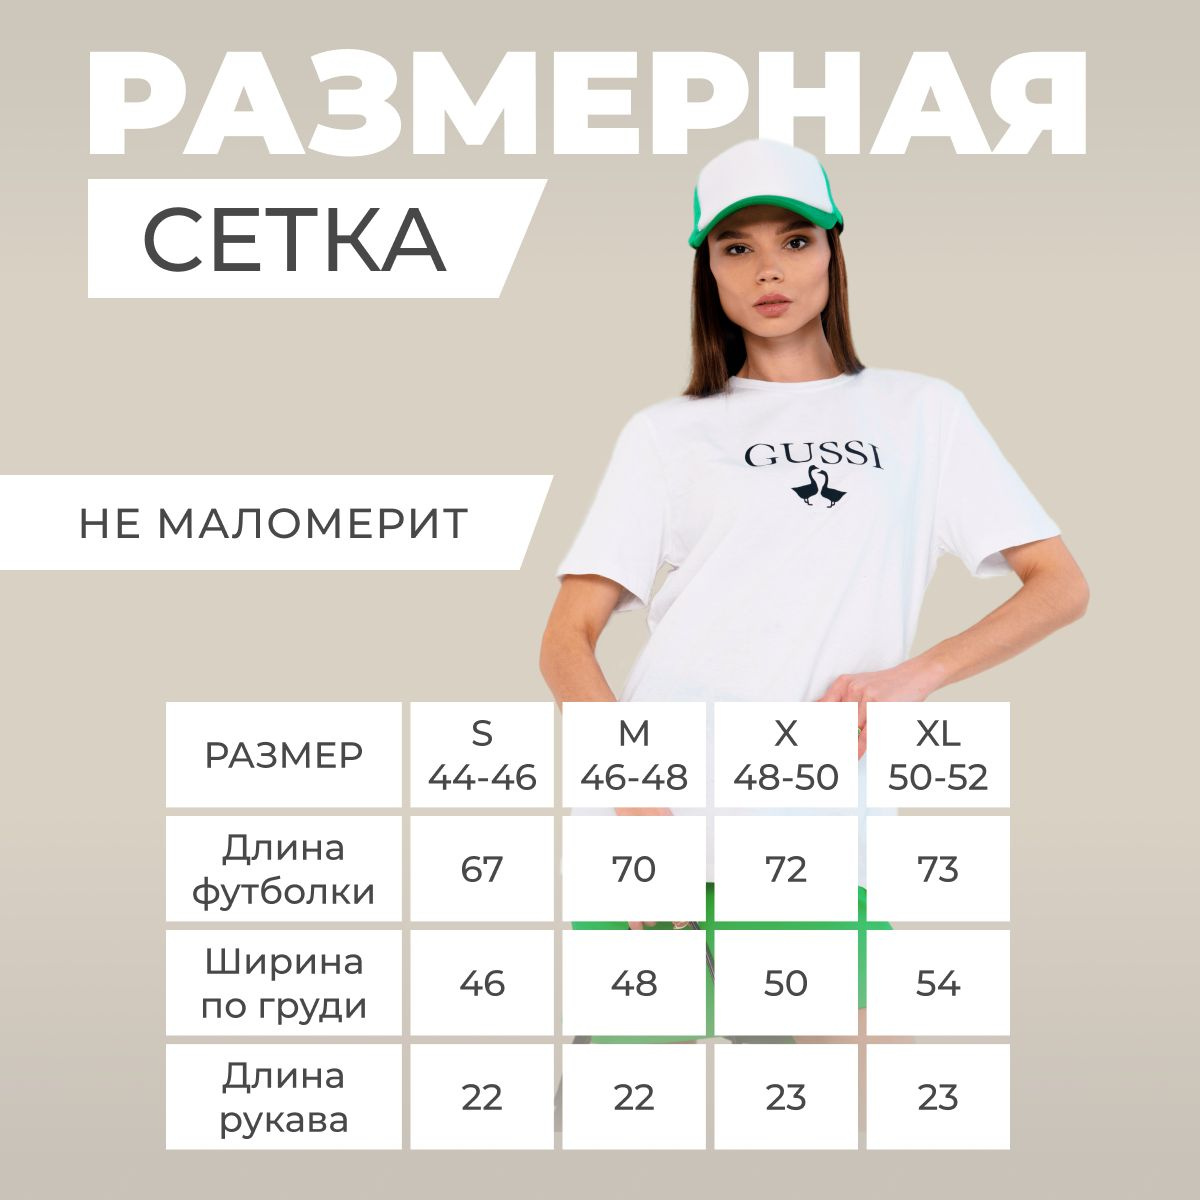 Размеры футболок соответствуют российским (не маломерит). Размерный ряд начинается от S и до XL (44-46, 46-48, 48-50, 50-52). Для стиля оверсайз, выбирайте футболку на 2 размера больше.